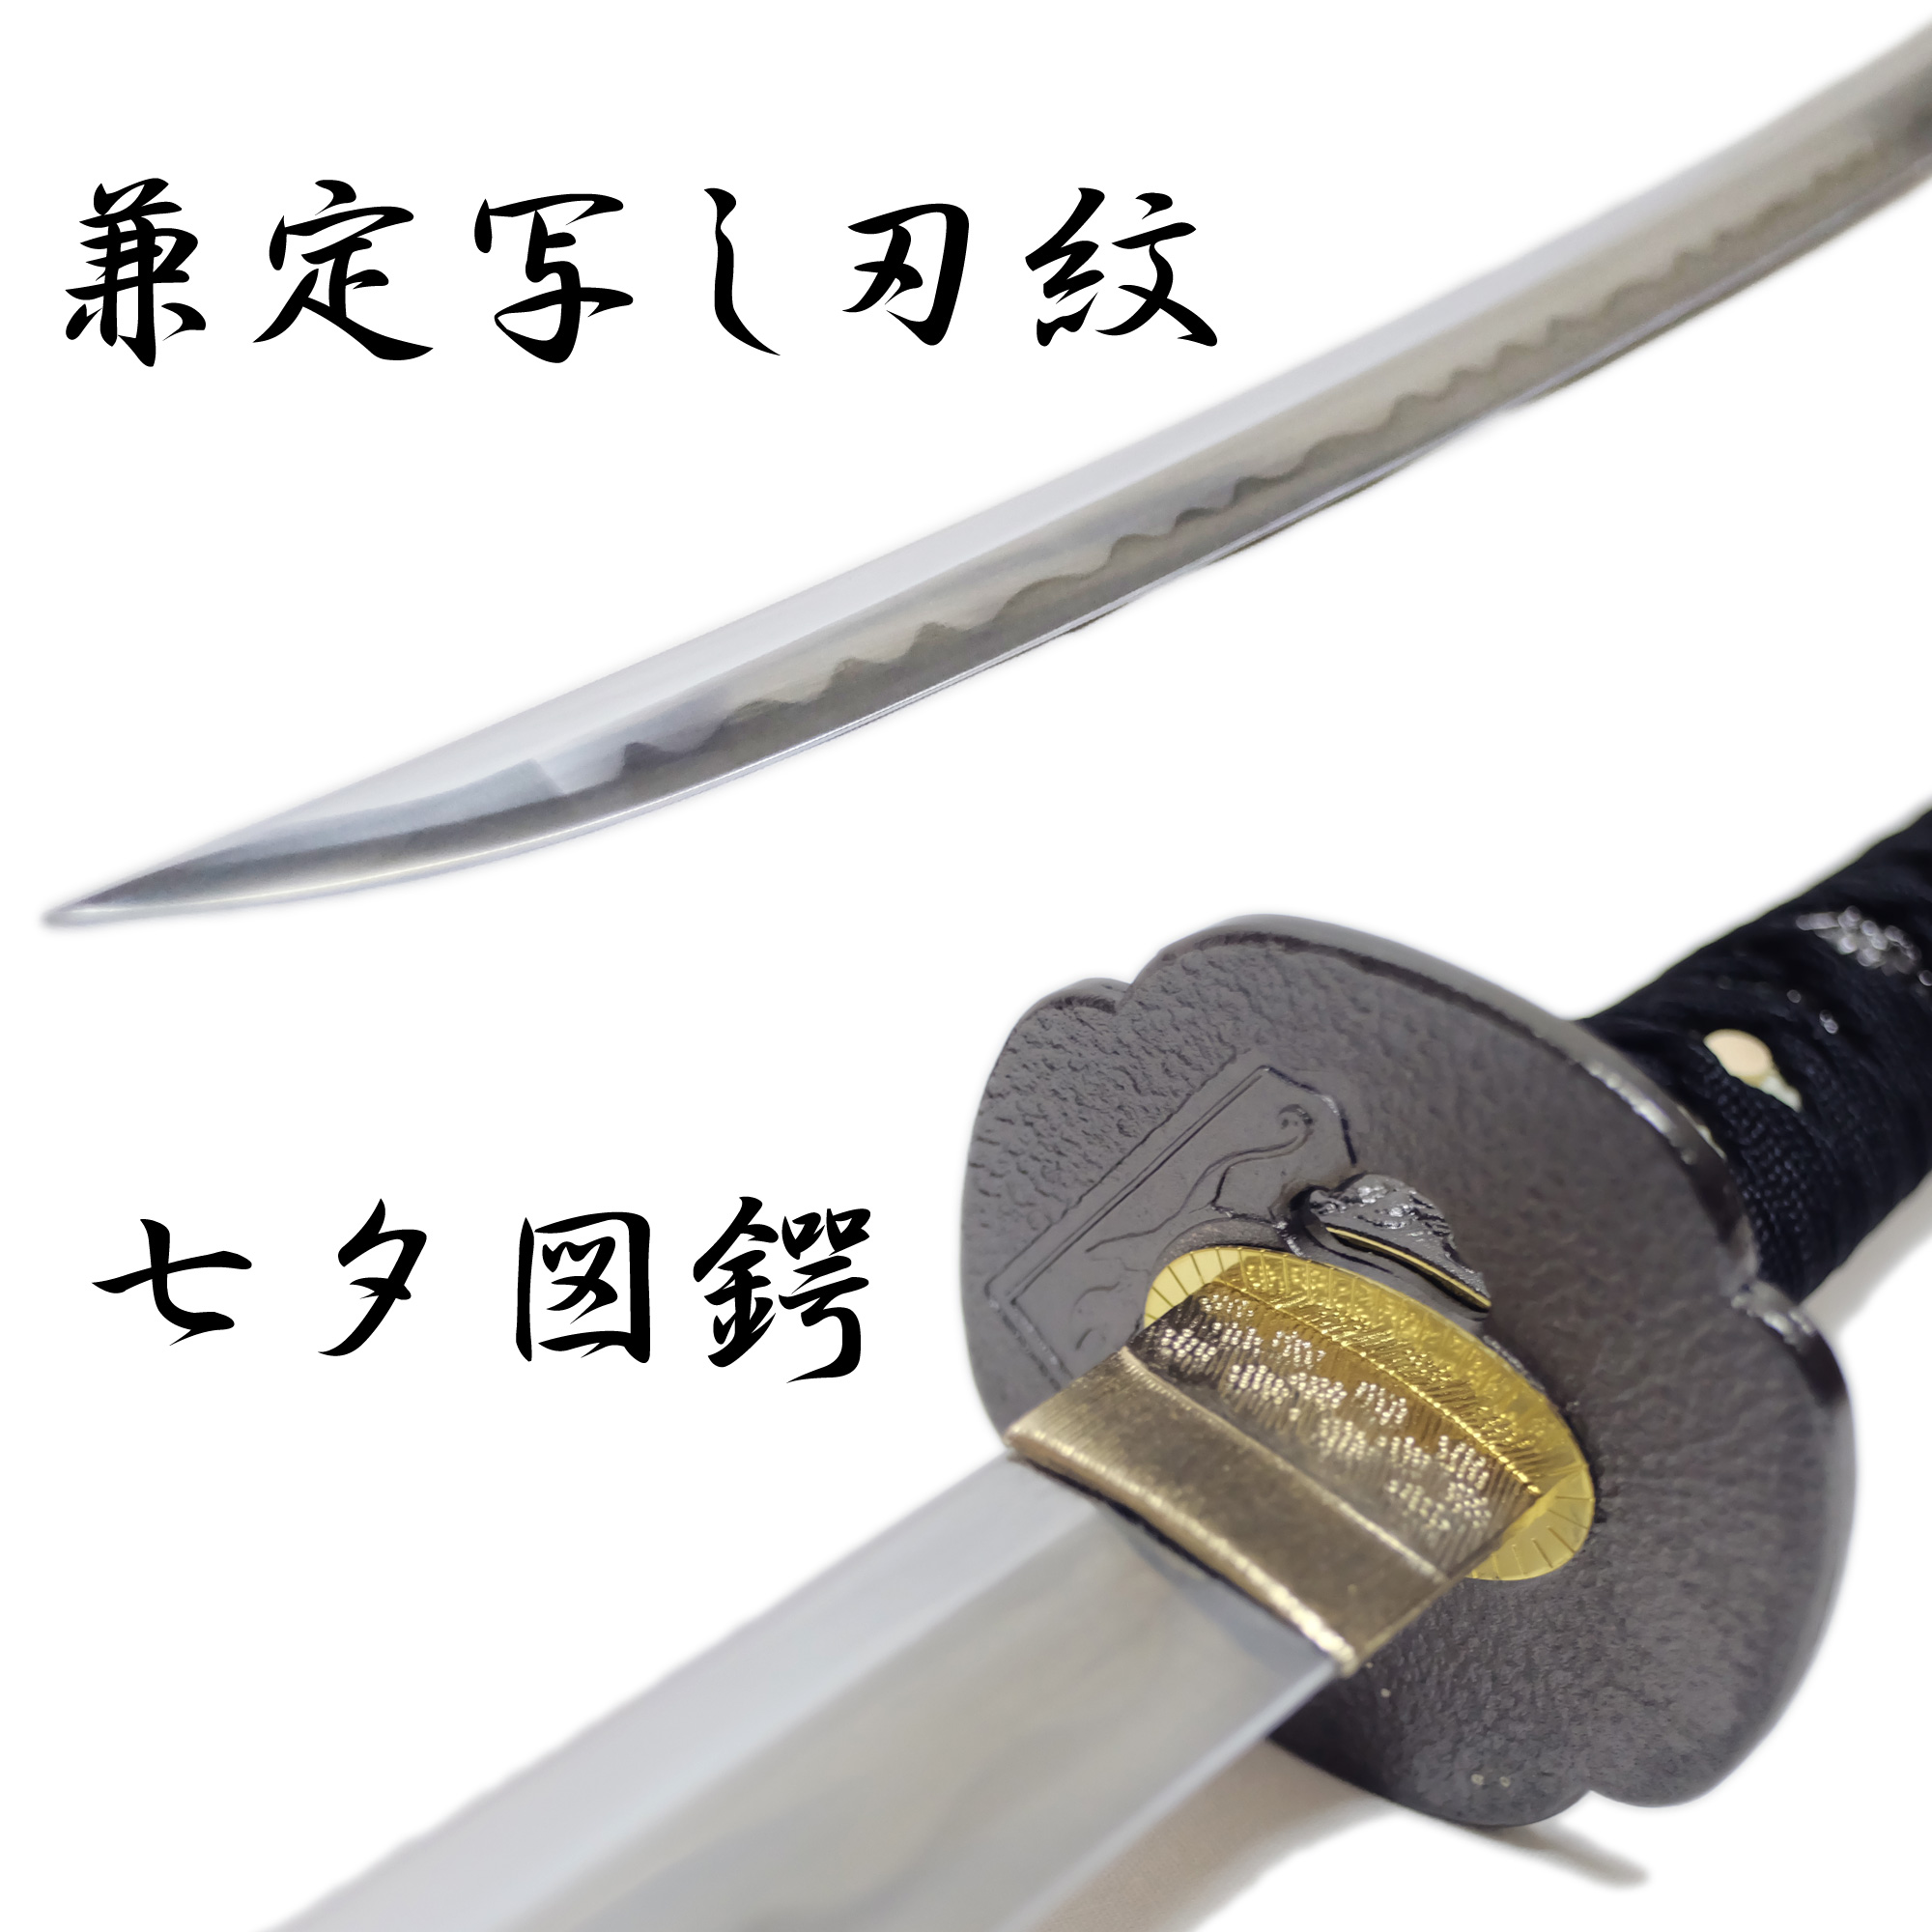 適切な価格 【値下げ】金属製 模造刀 和泉守兼定 武具 - kintarogroup.com